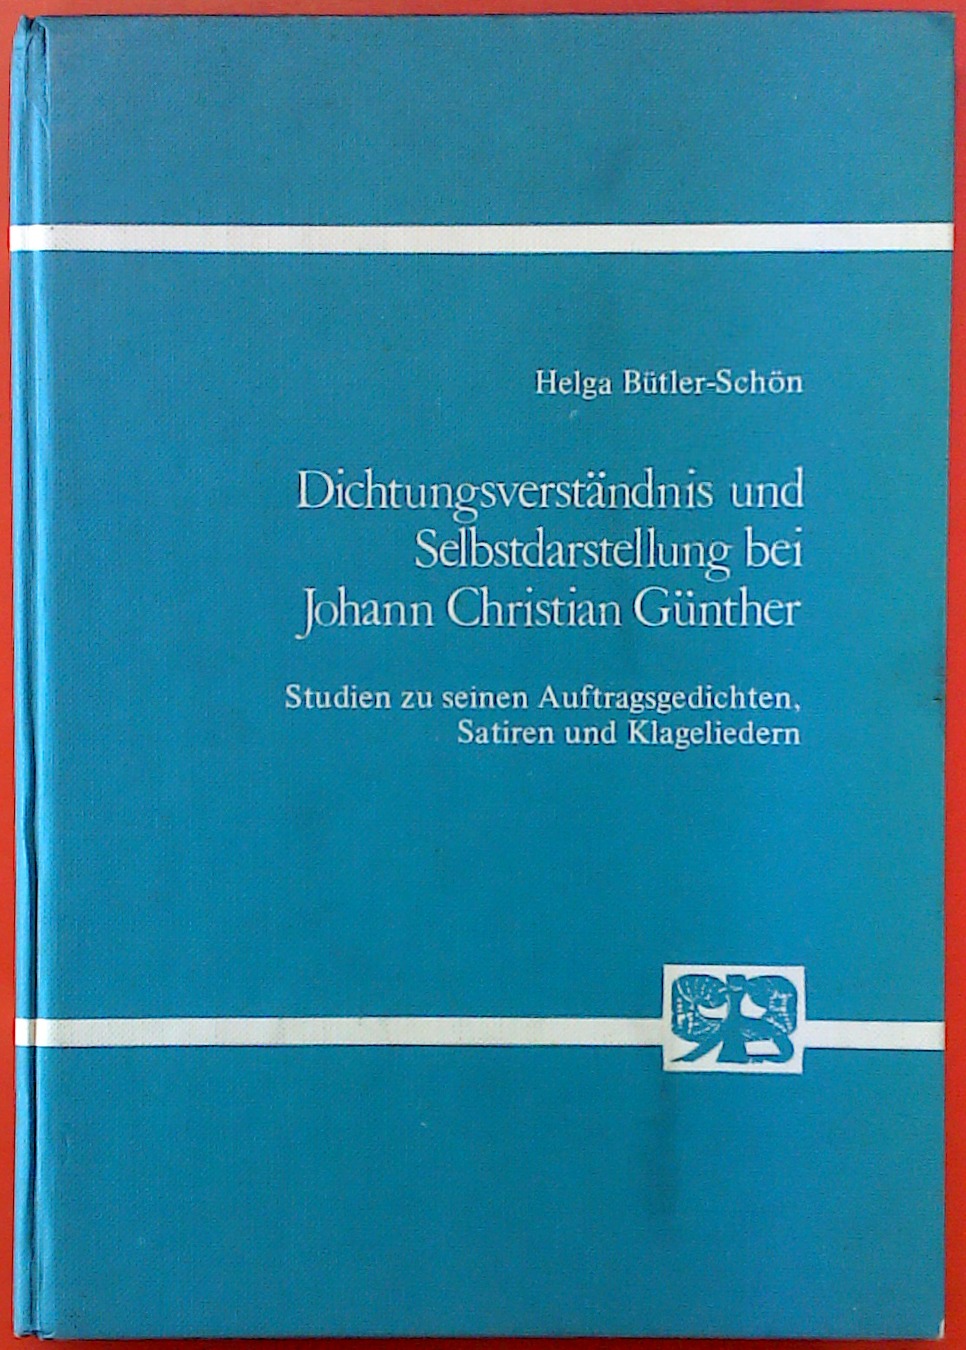 Dichtungsverständnis und Selbstdarstellung bei Johann Christian Günther - Helga Bütler-Schön